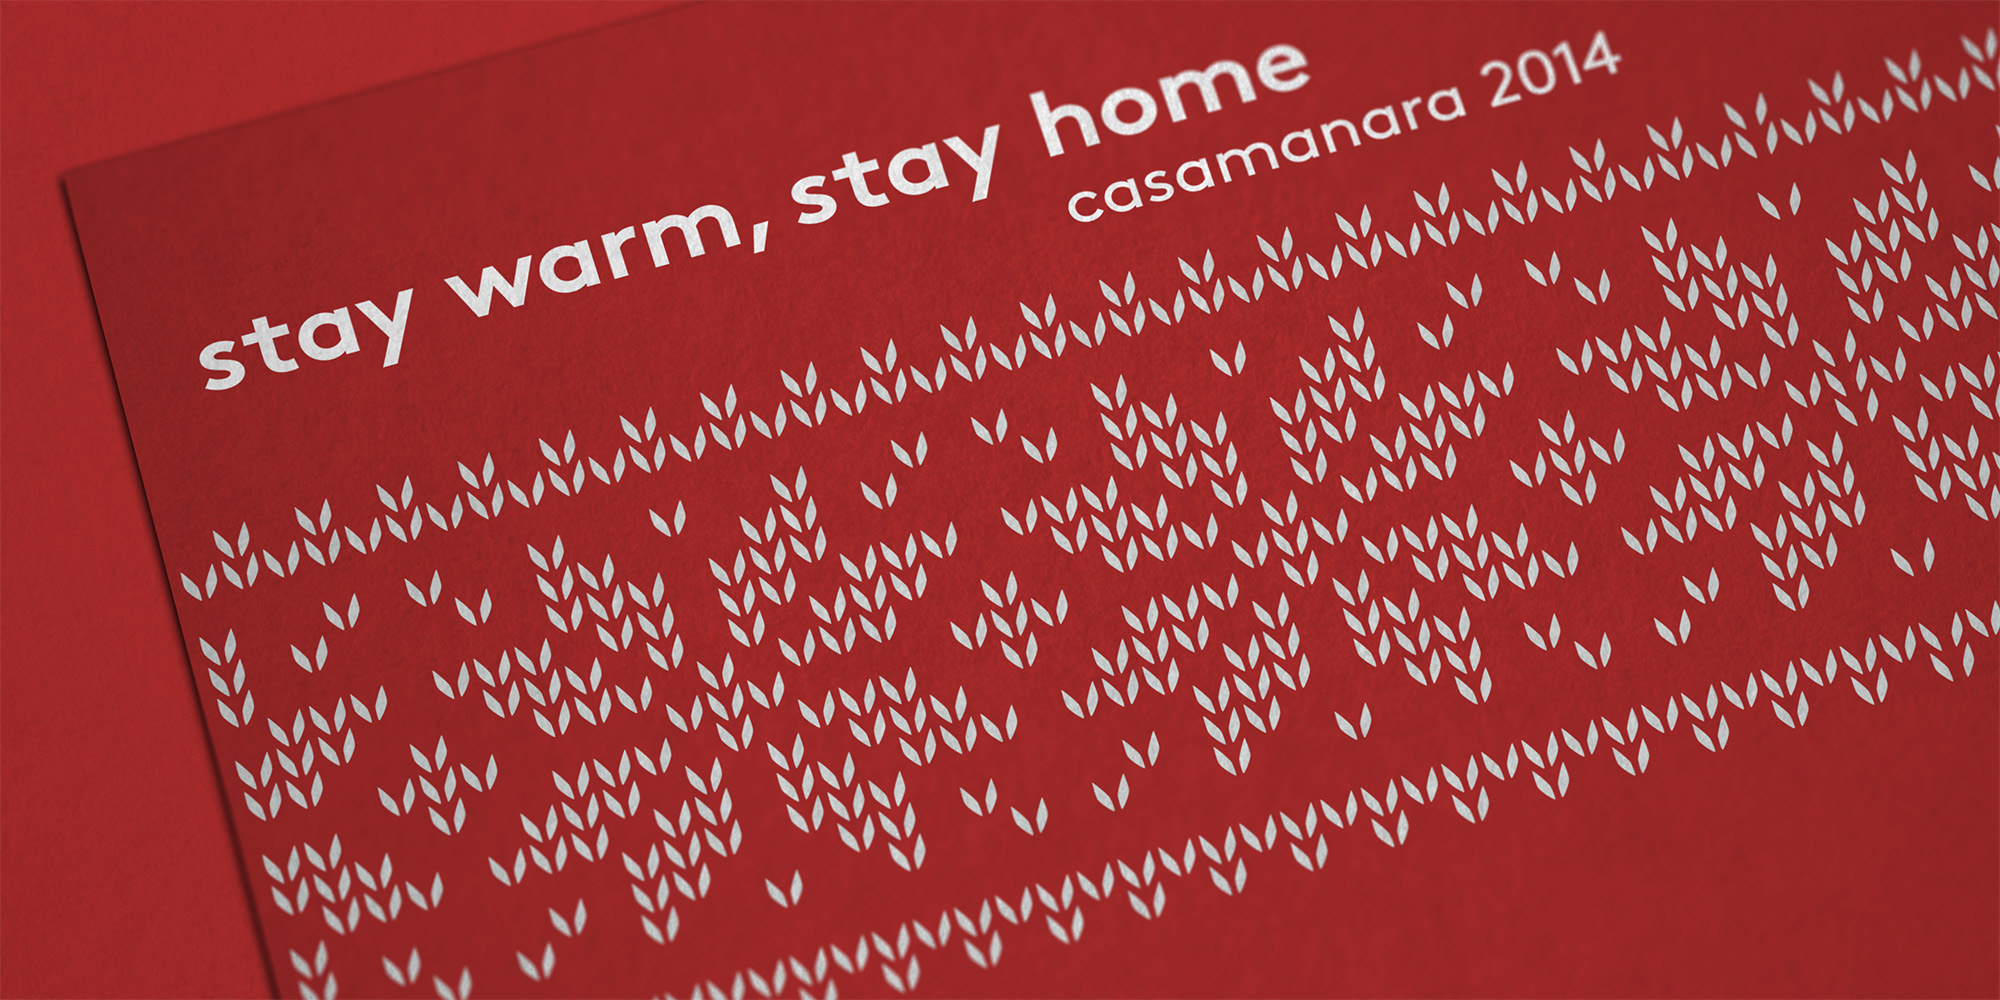 Casamanara Holiday Card 2014